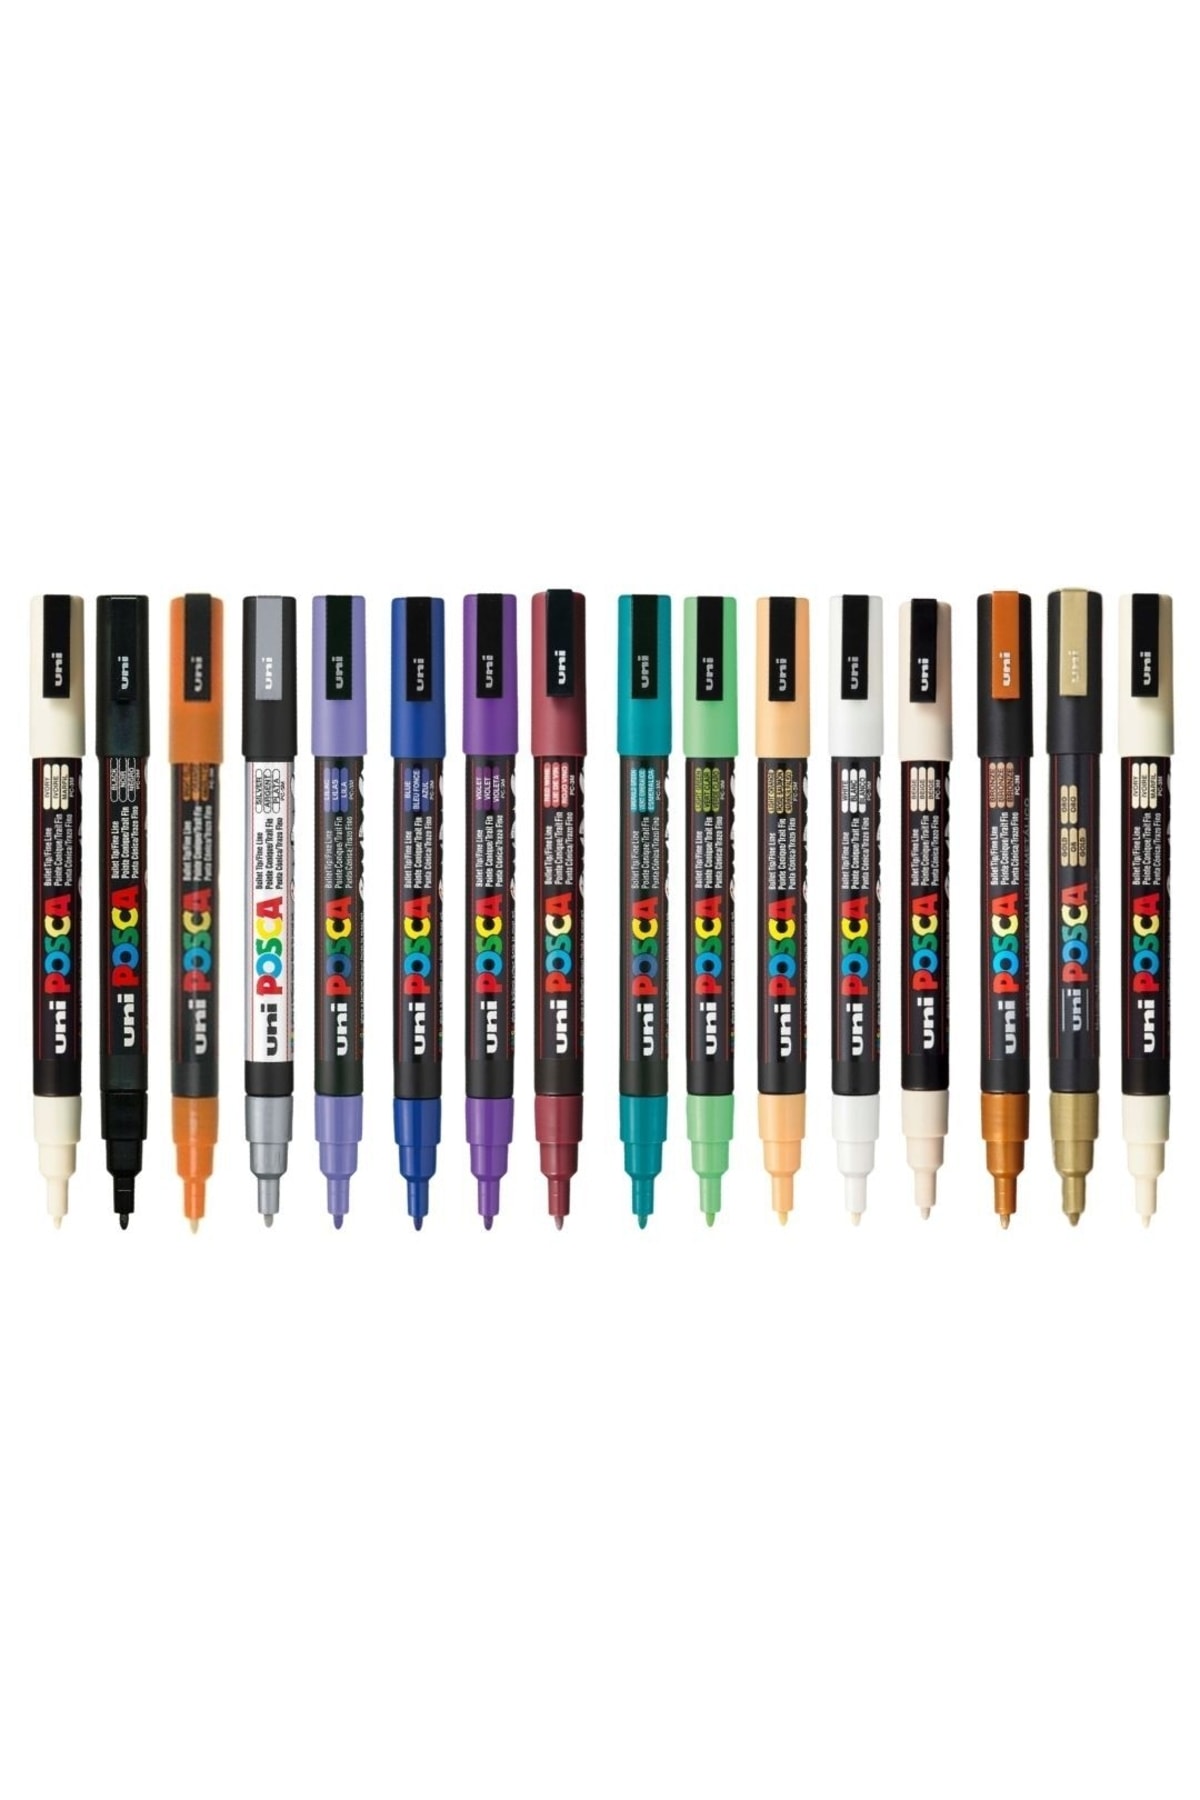 Uni Posca Marker Kalem Pc-3m (0.9-1.3mm) 16'lı Set Karışık Renkler